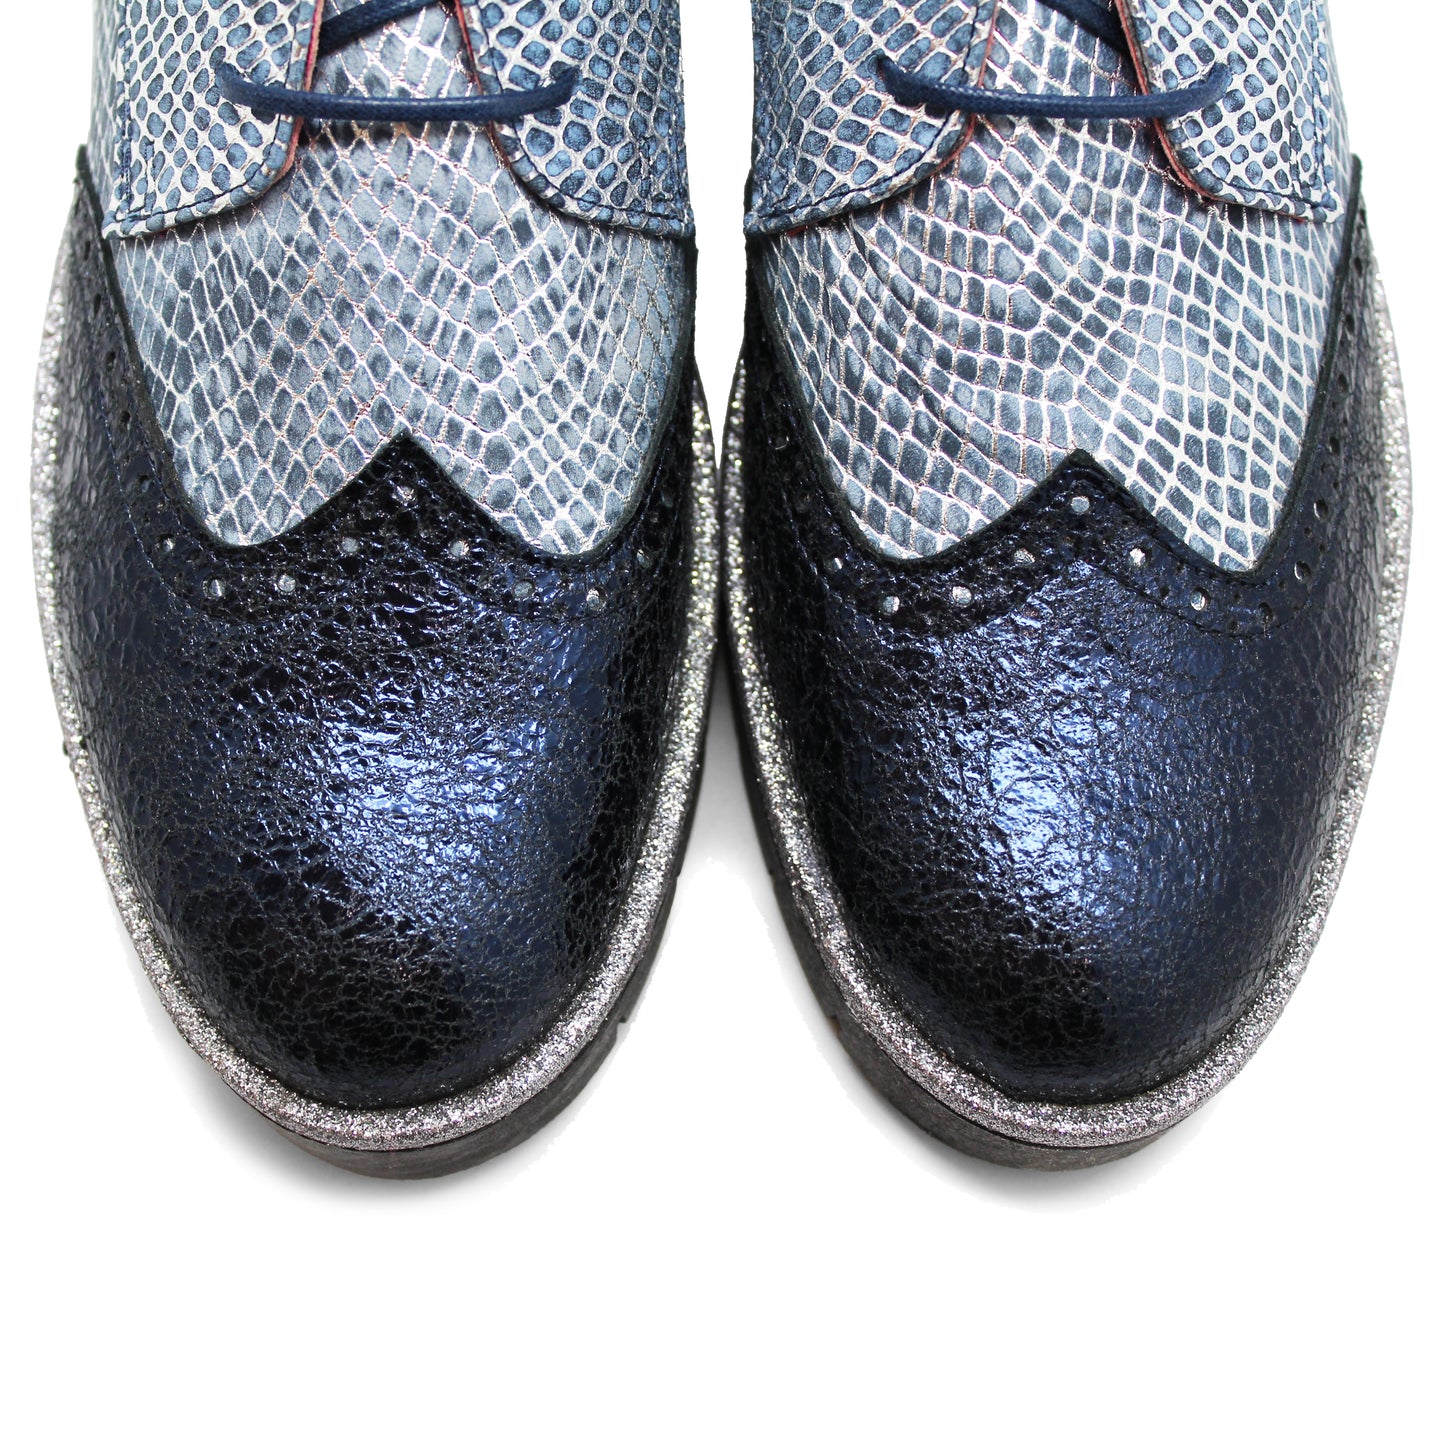 Bolt - Blue Crack Metallic lace up shoe- last pair 39!